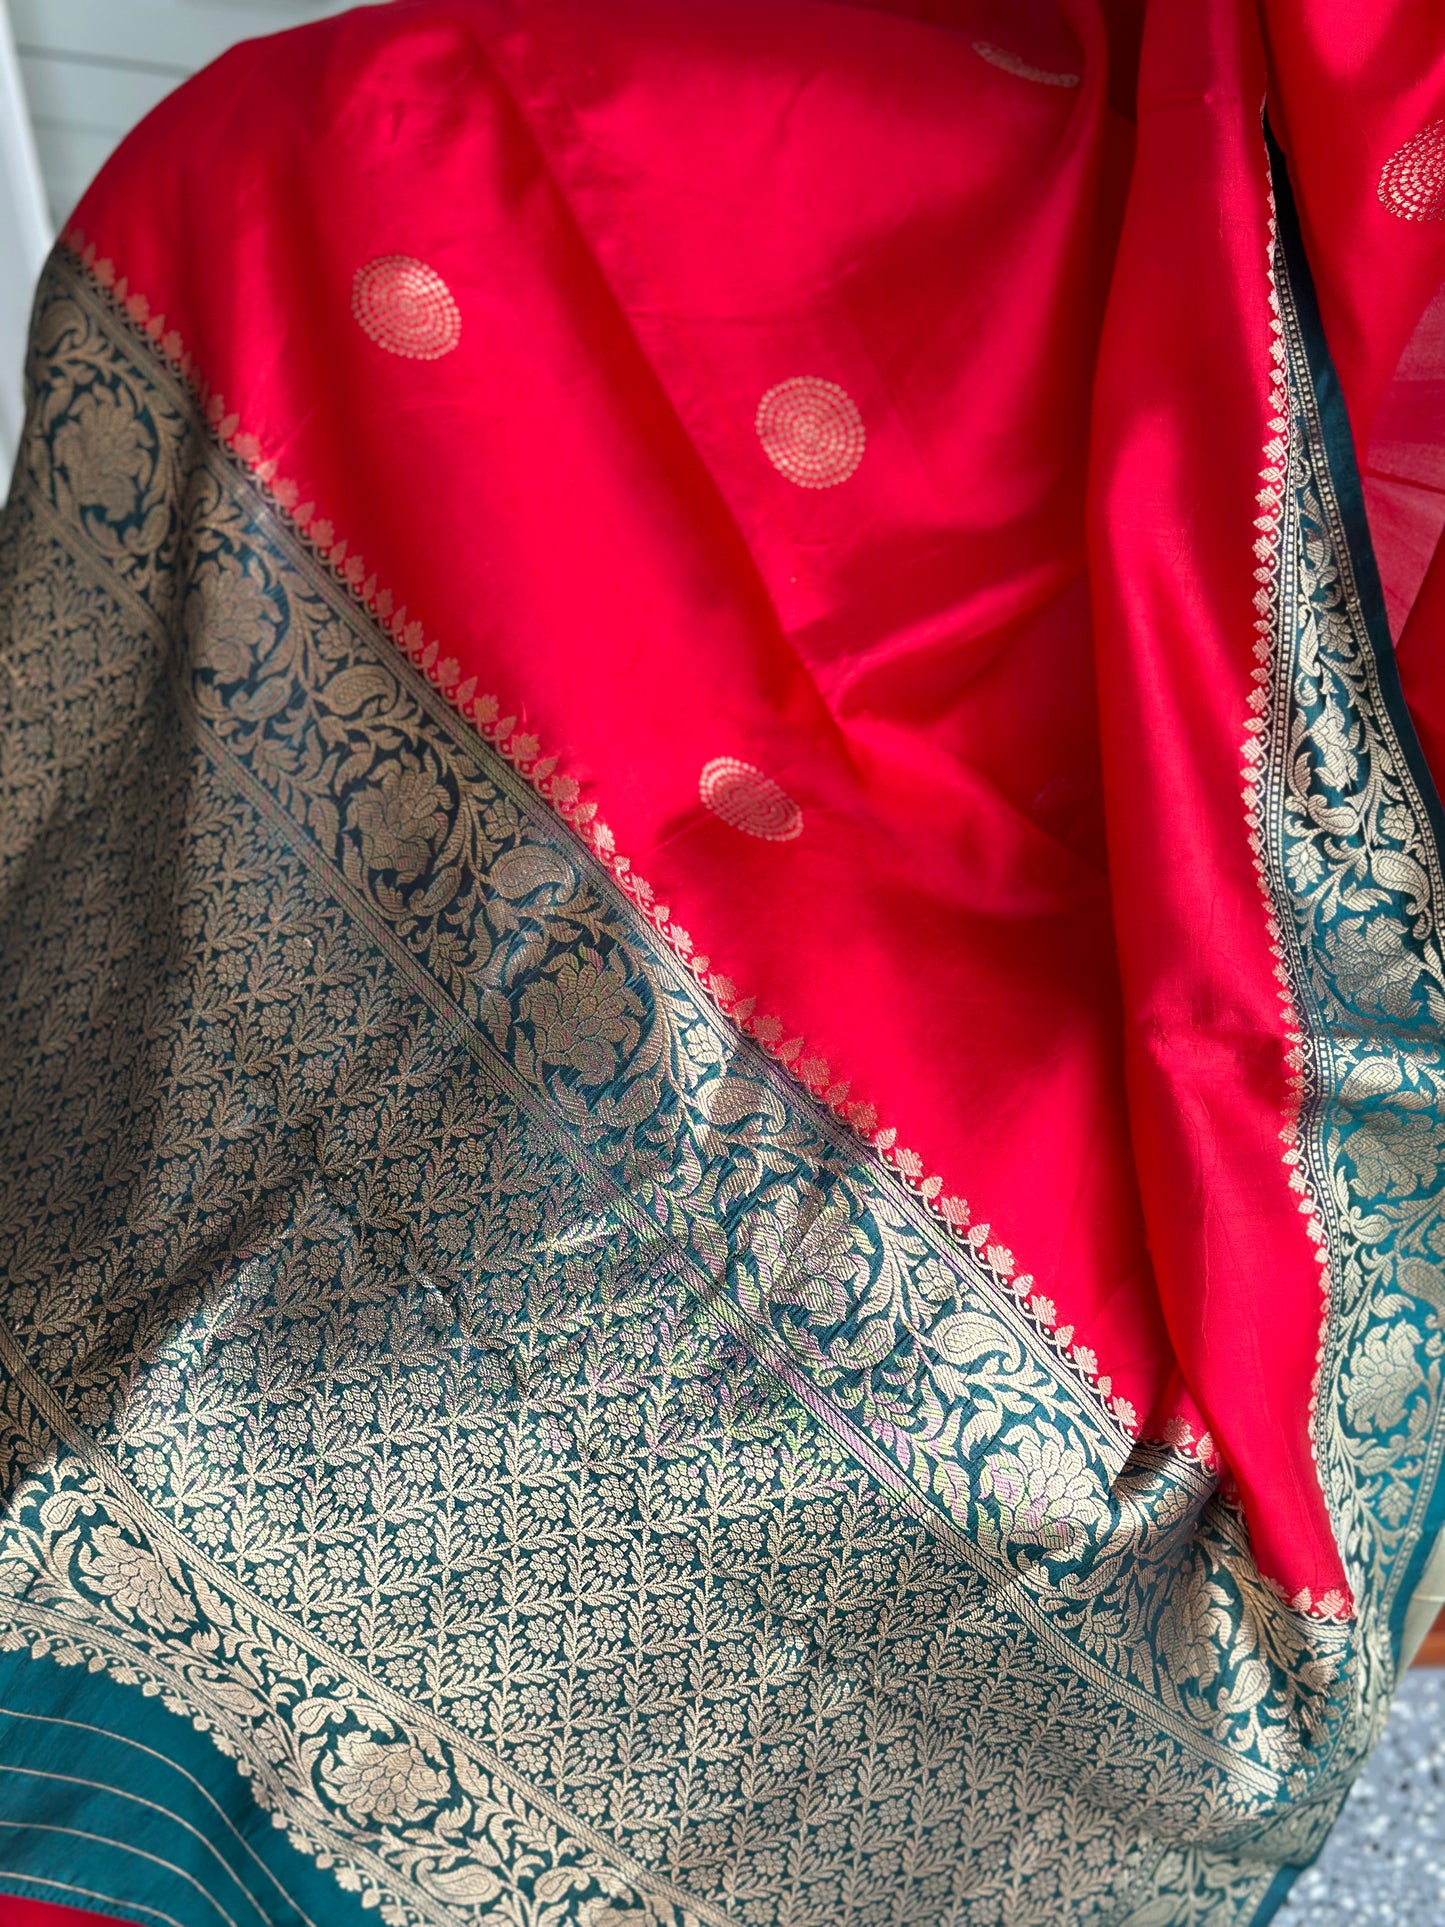 Benaras silk saree | Pattu saree | ready to wear saree